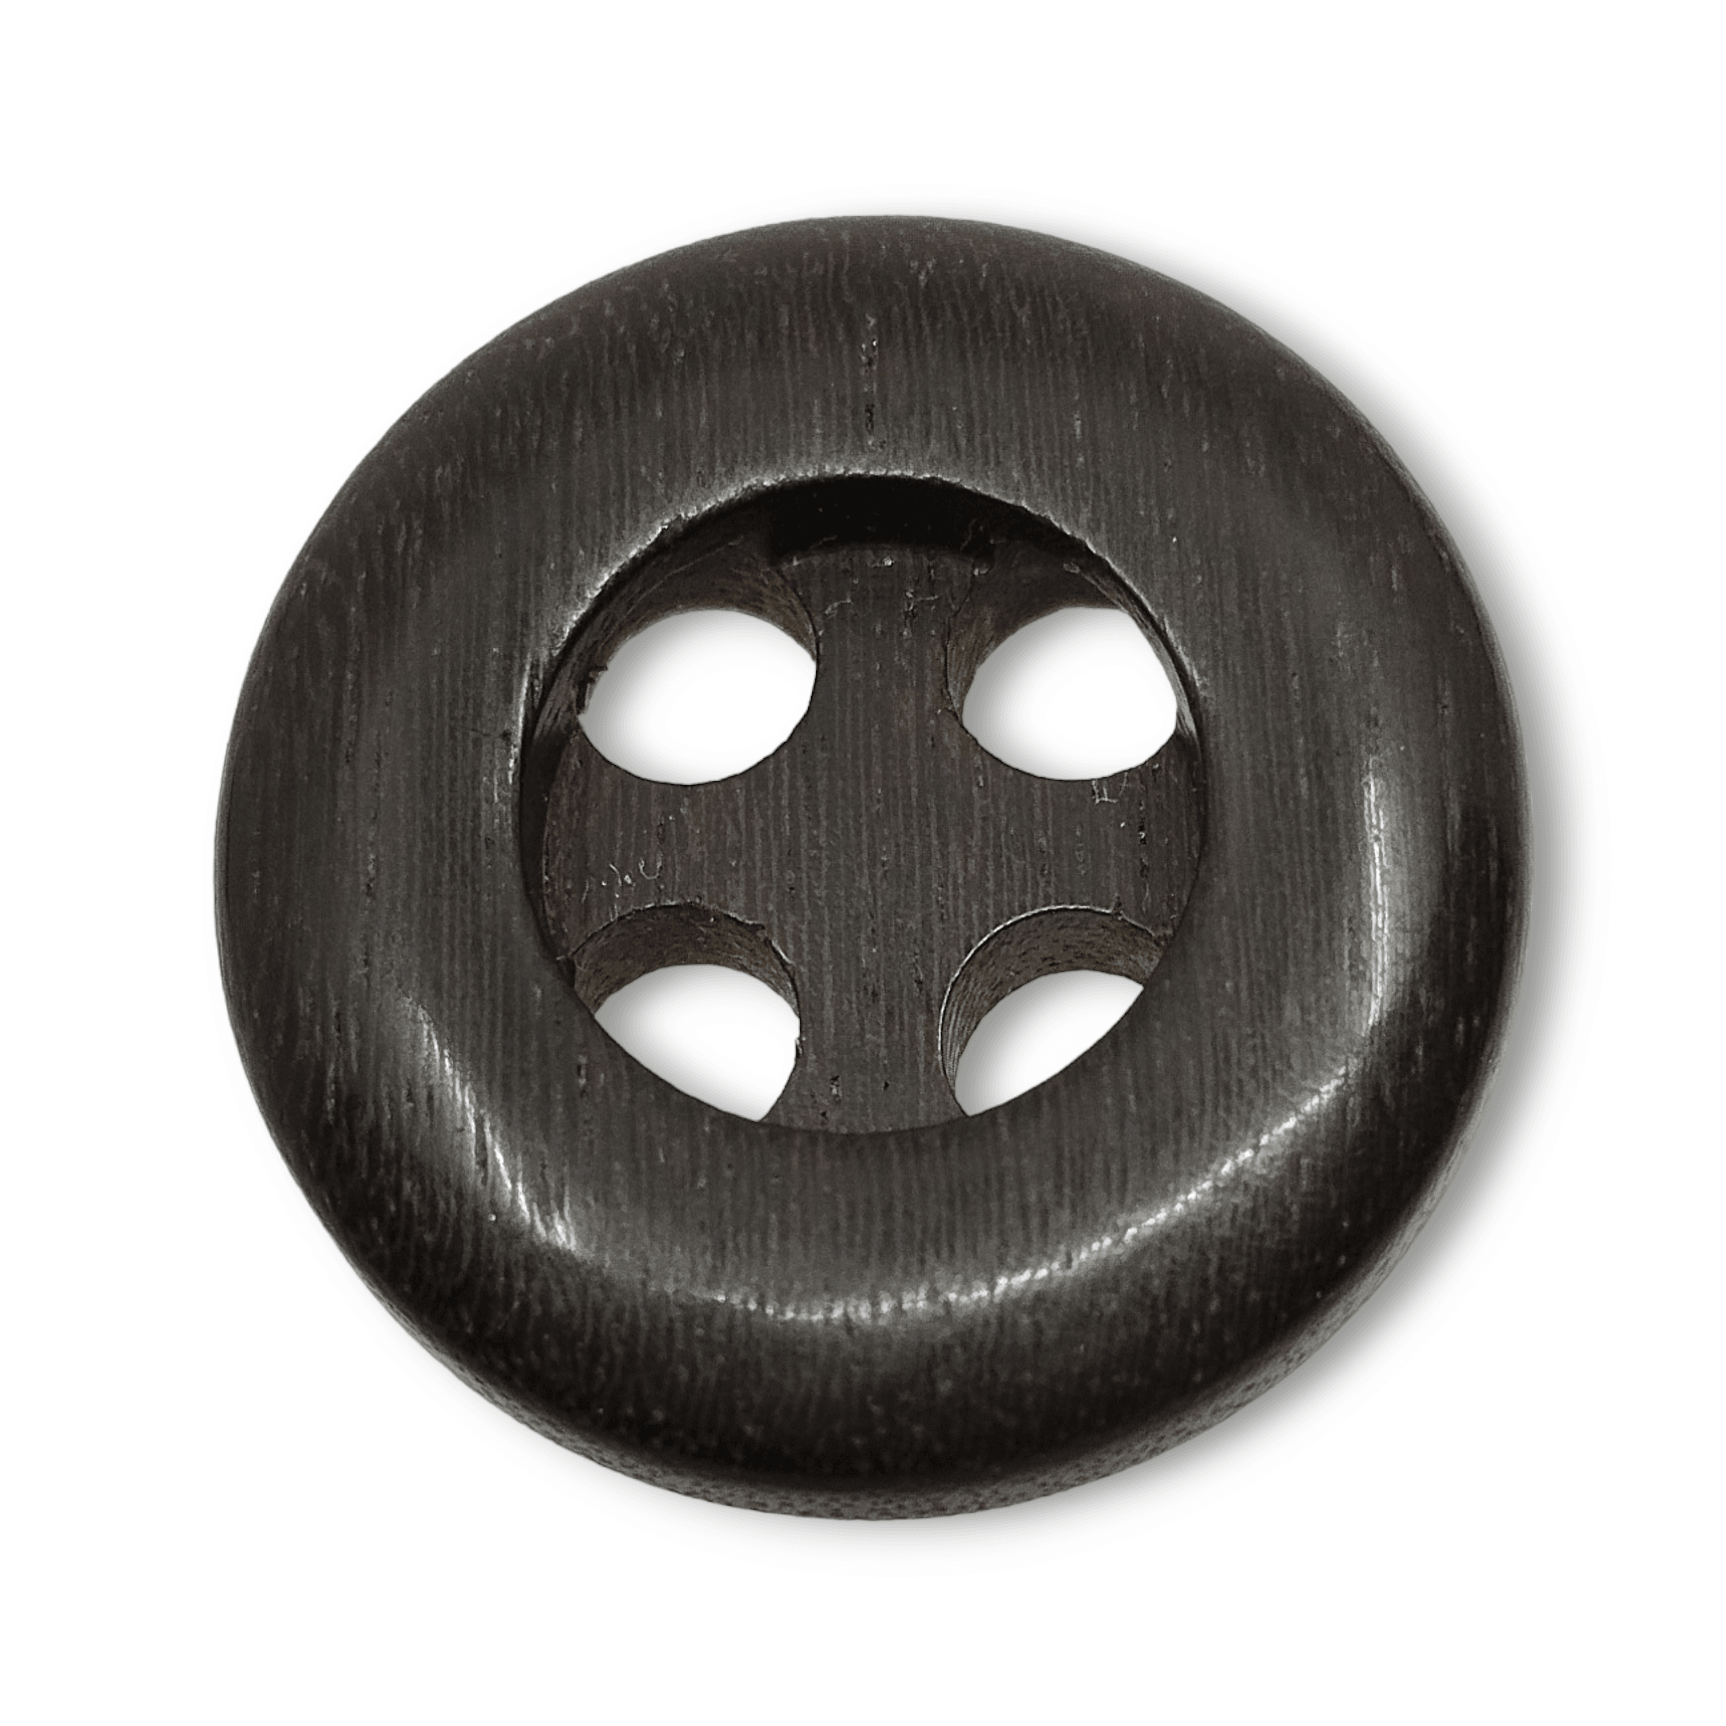 Bottone in legno tonalità scura, bordo largo, 4 maxi fori - Merceria Rispoli